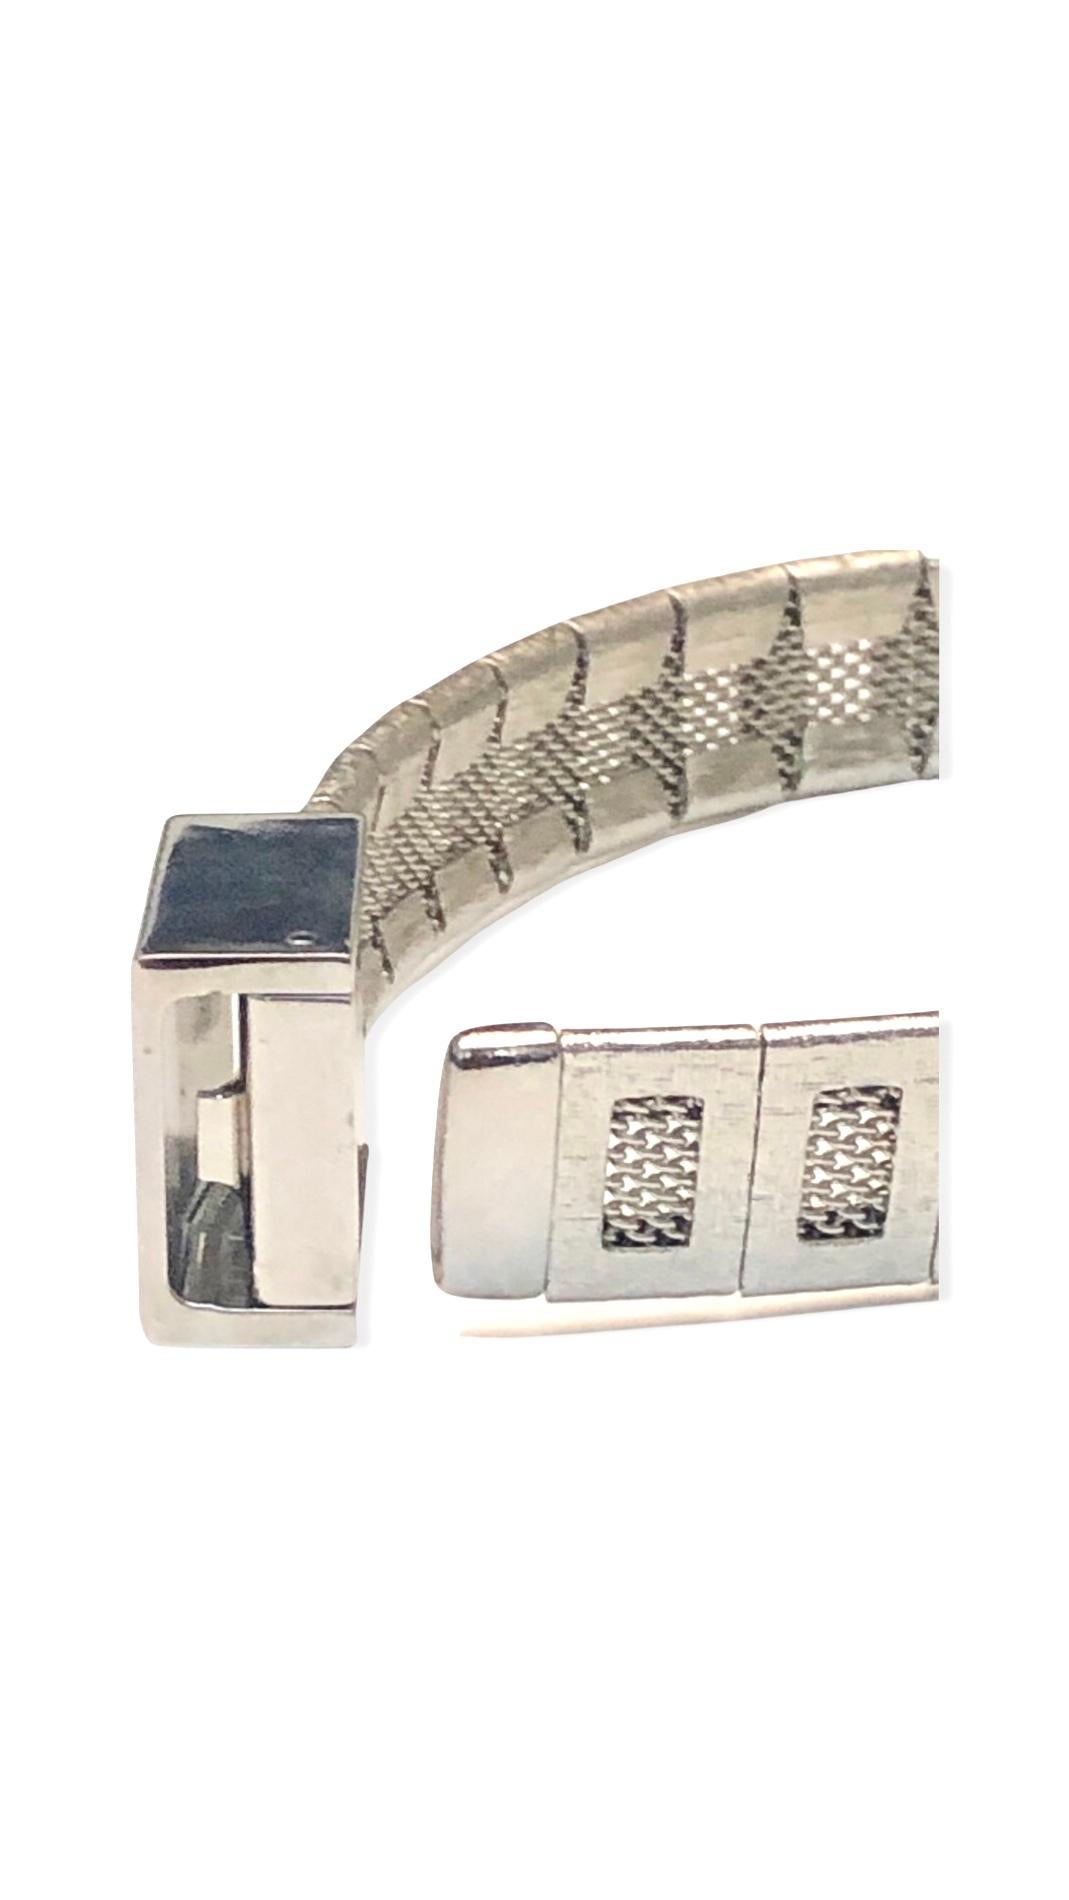 - Vintage Chanel Silber getönten Metallkette Armband aus dem Jahr 1998 collection. 

- Größe: 22 cm Länge. 1,5 cm Breite. 

